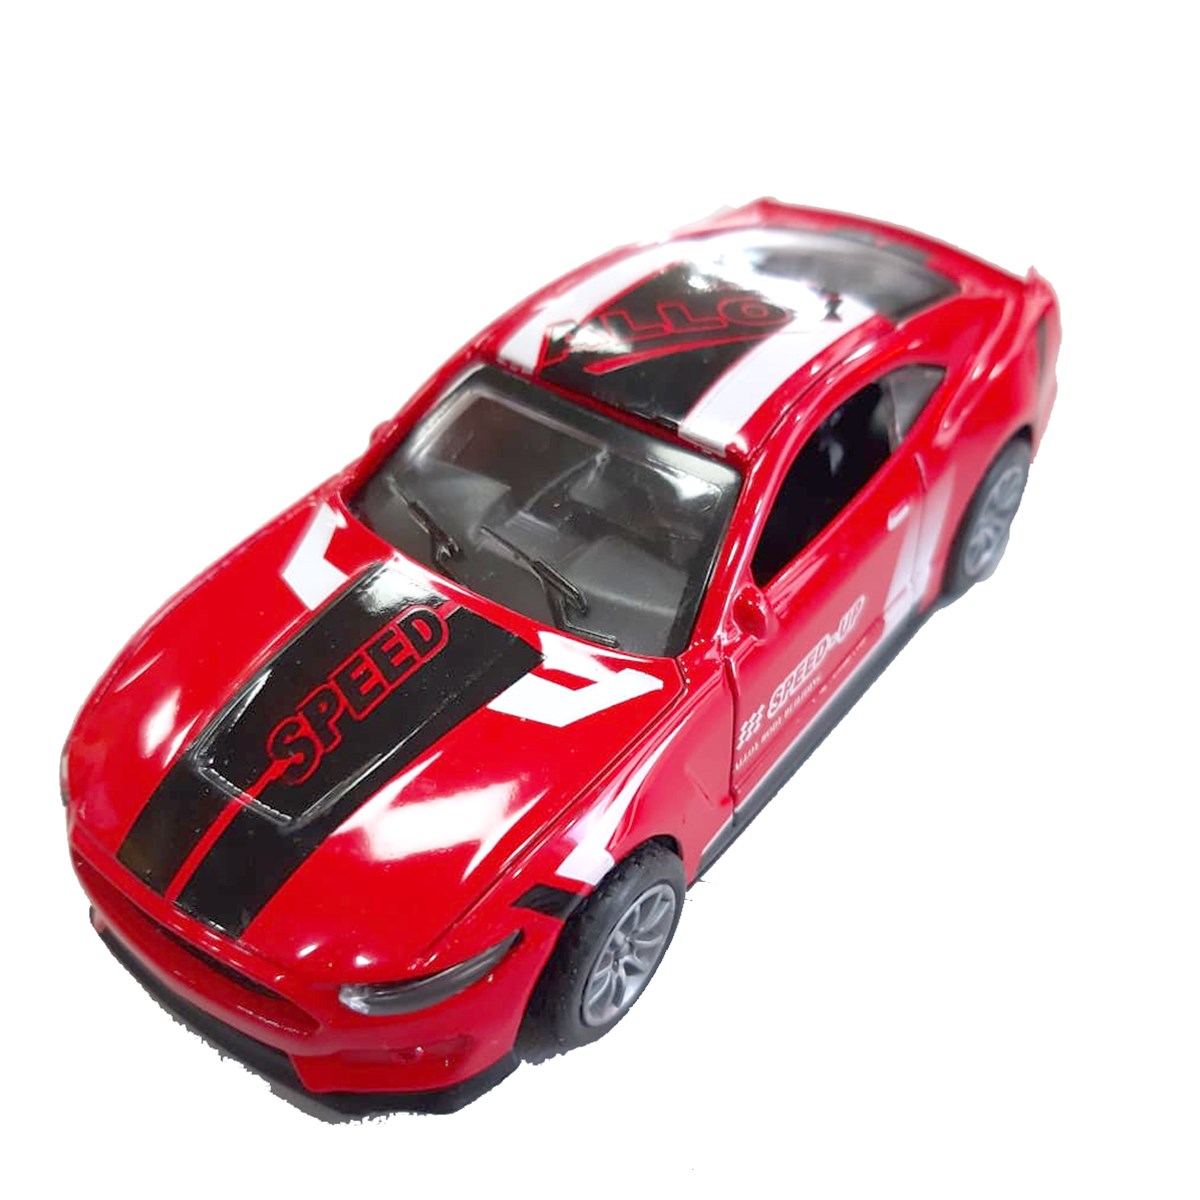 Metal Çek Bırak Araba Model 4 Ürün Modelleri, Fiyatları - AKBAK MARKET ILGAZ